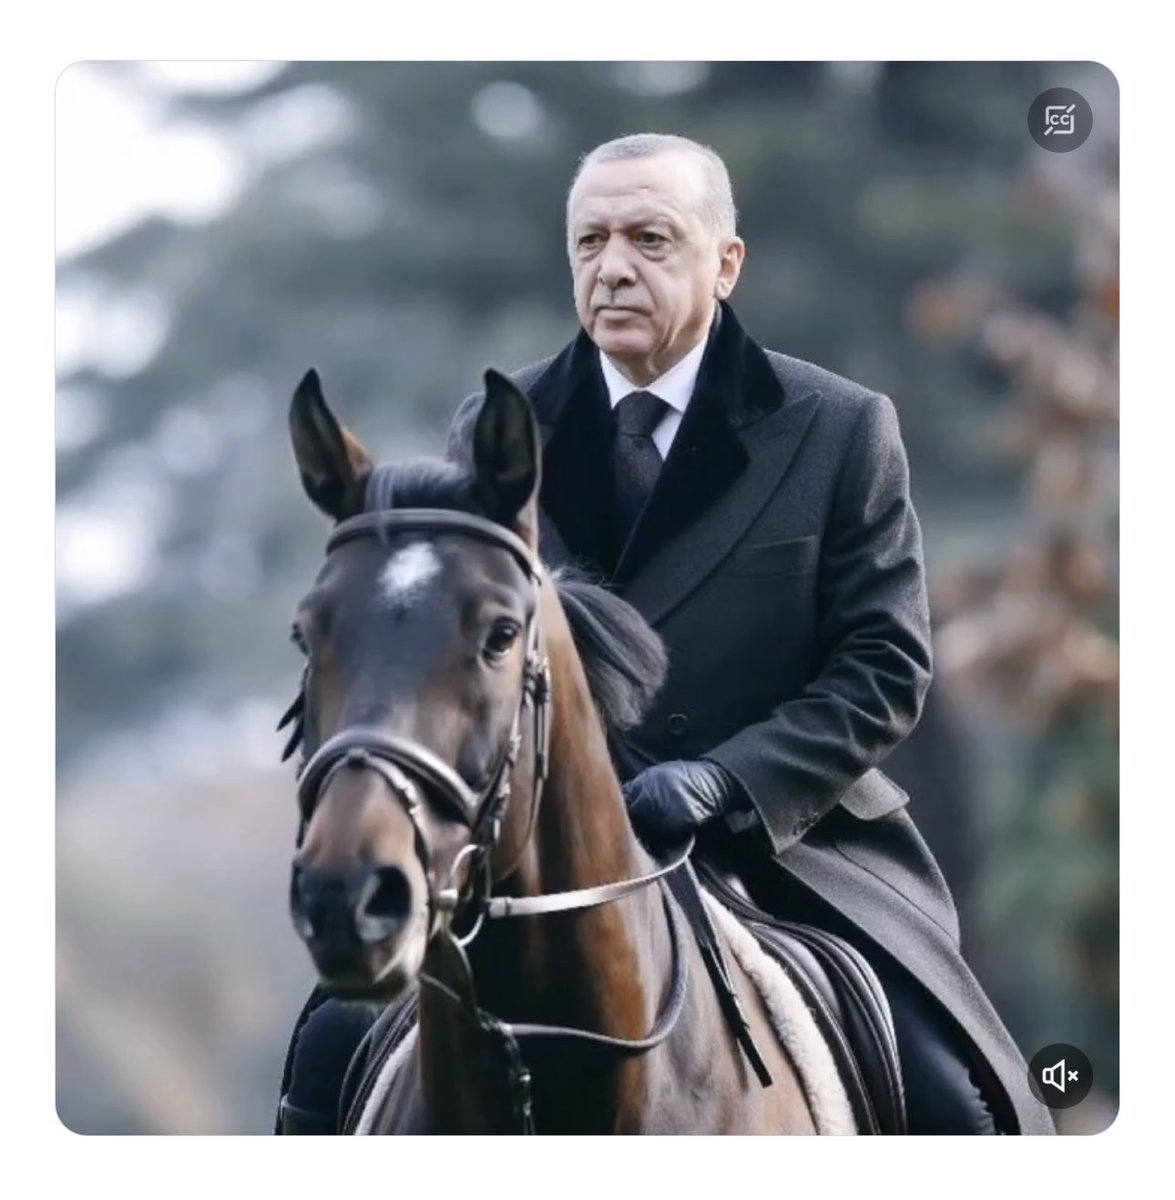 Devletimiz var olsun🇹🇷 Cumhurbaşkanı Erdoğan’ın yanındayım.